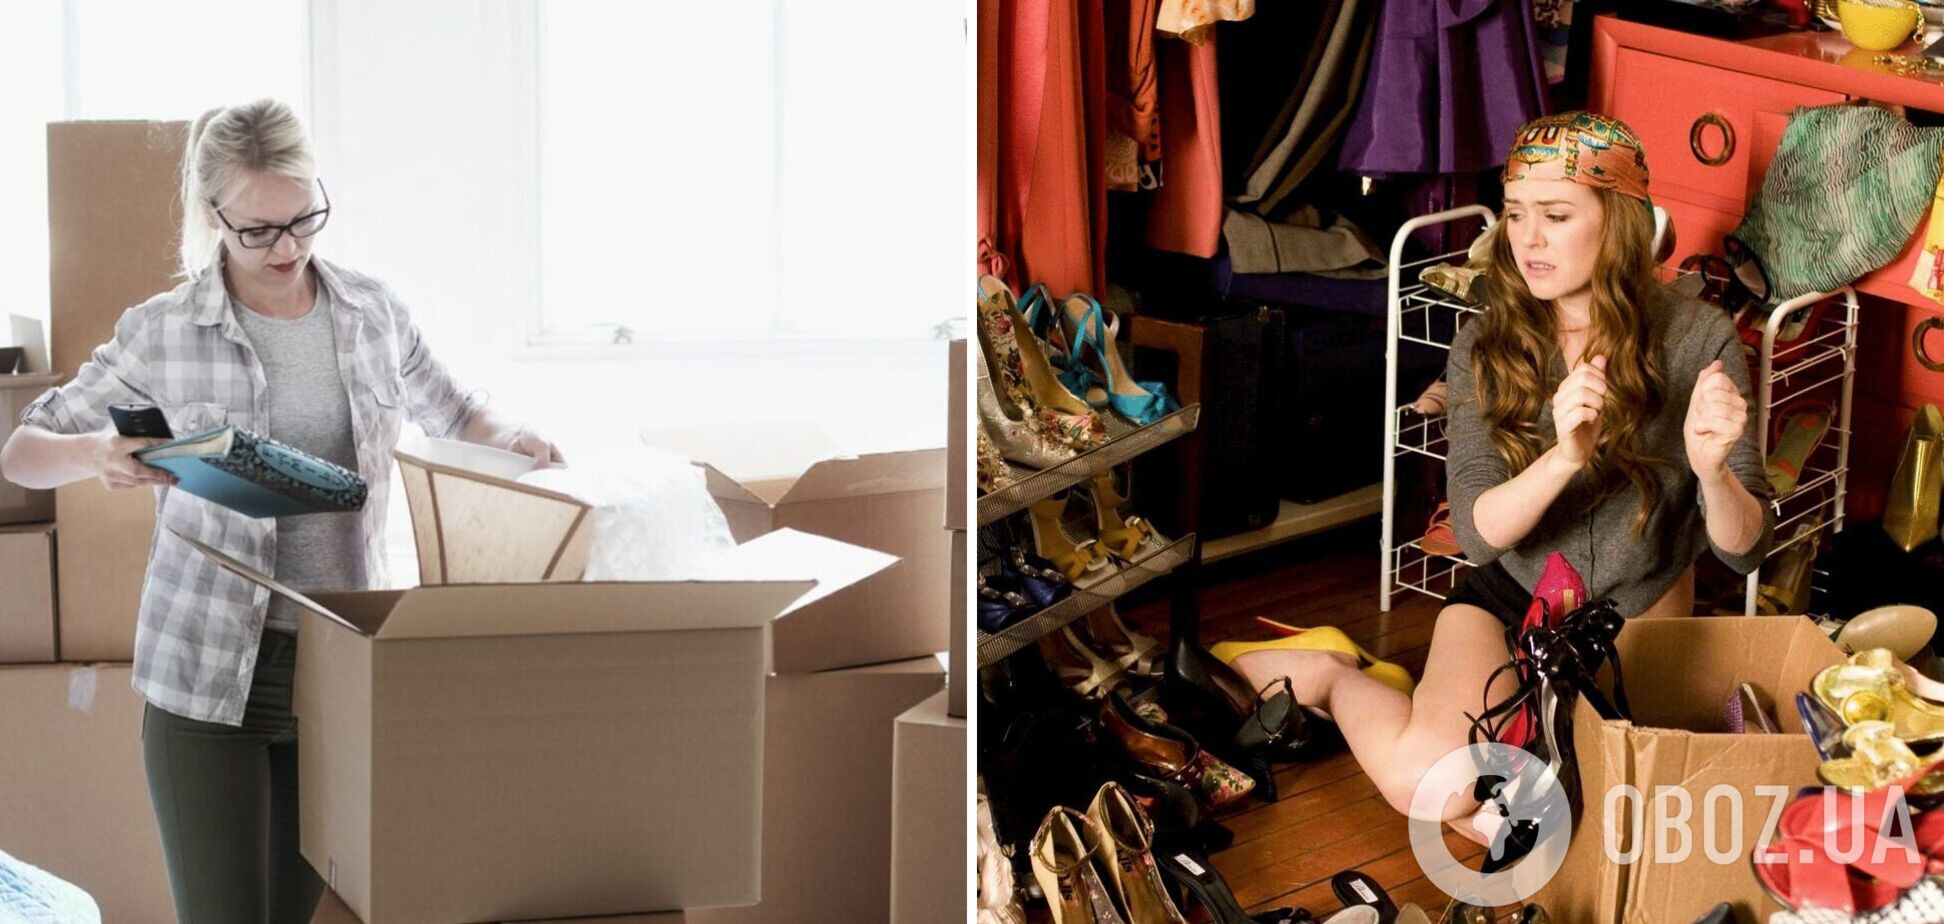 Как жить с 30 вещами в гардеробе, избавиться от хлама и приучиться к порядку. Интервью с экспертом-минималистом